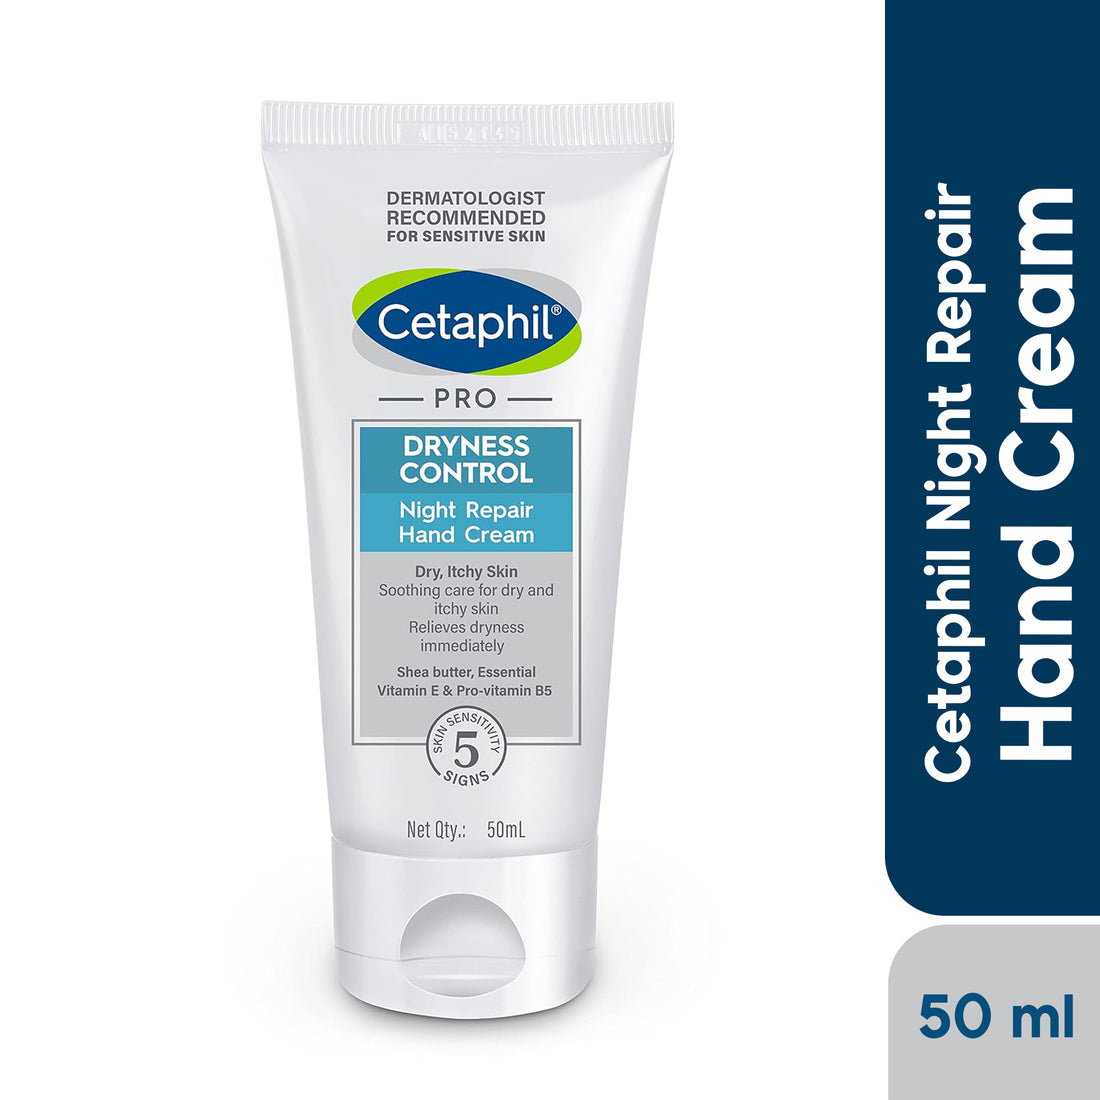 Cetaphil Pro Dryness Control Night Repair Hand Cream (50ml)